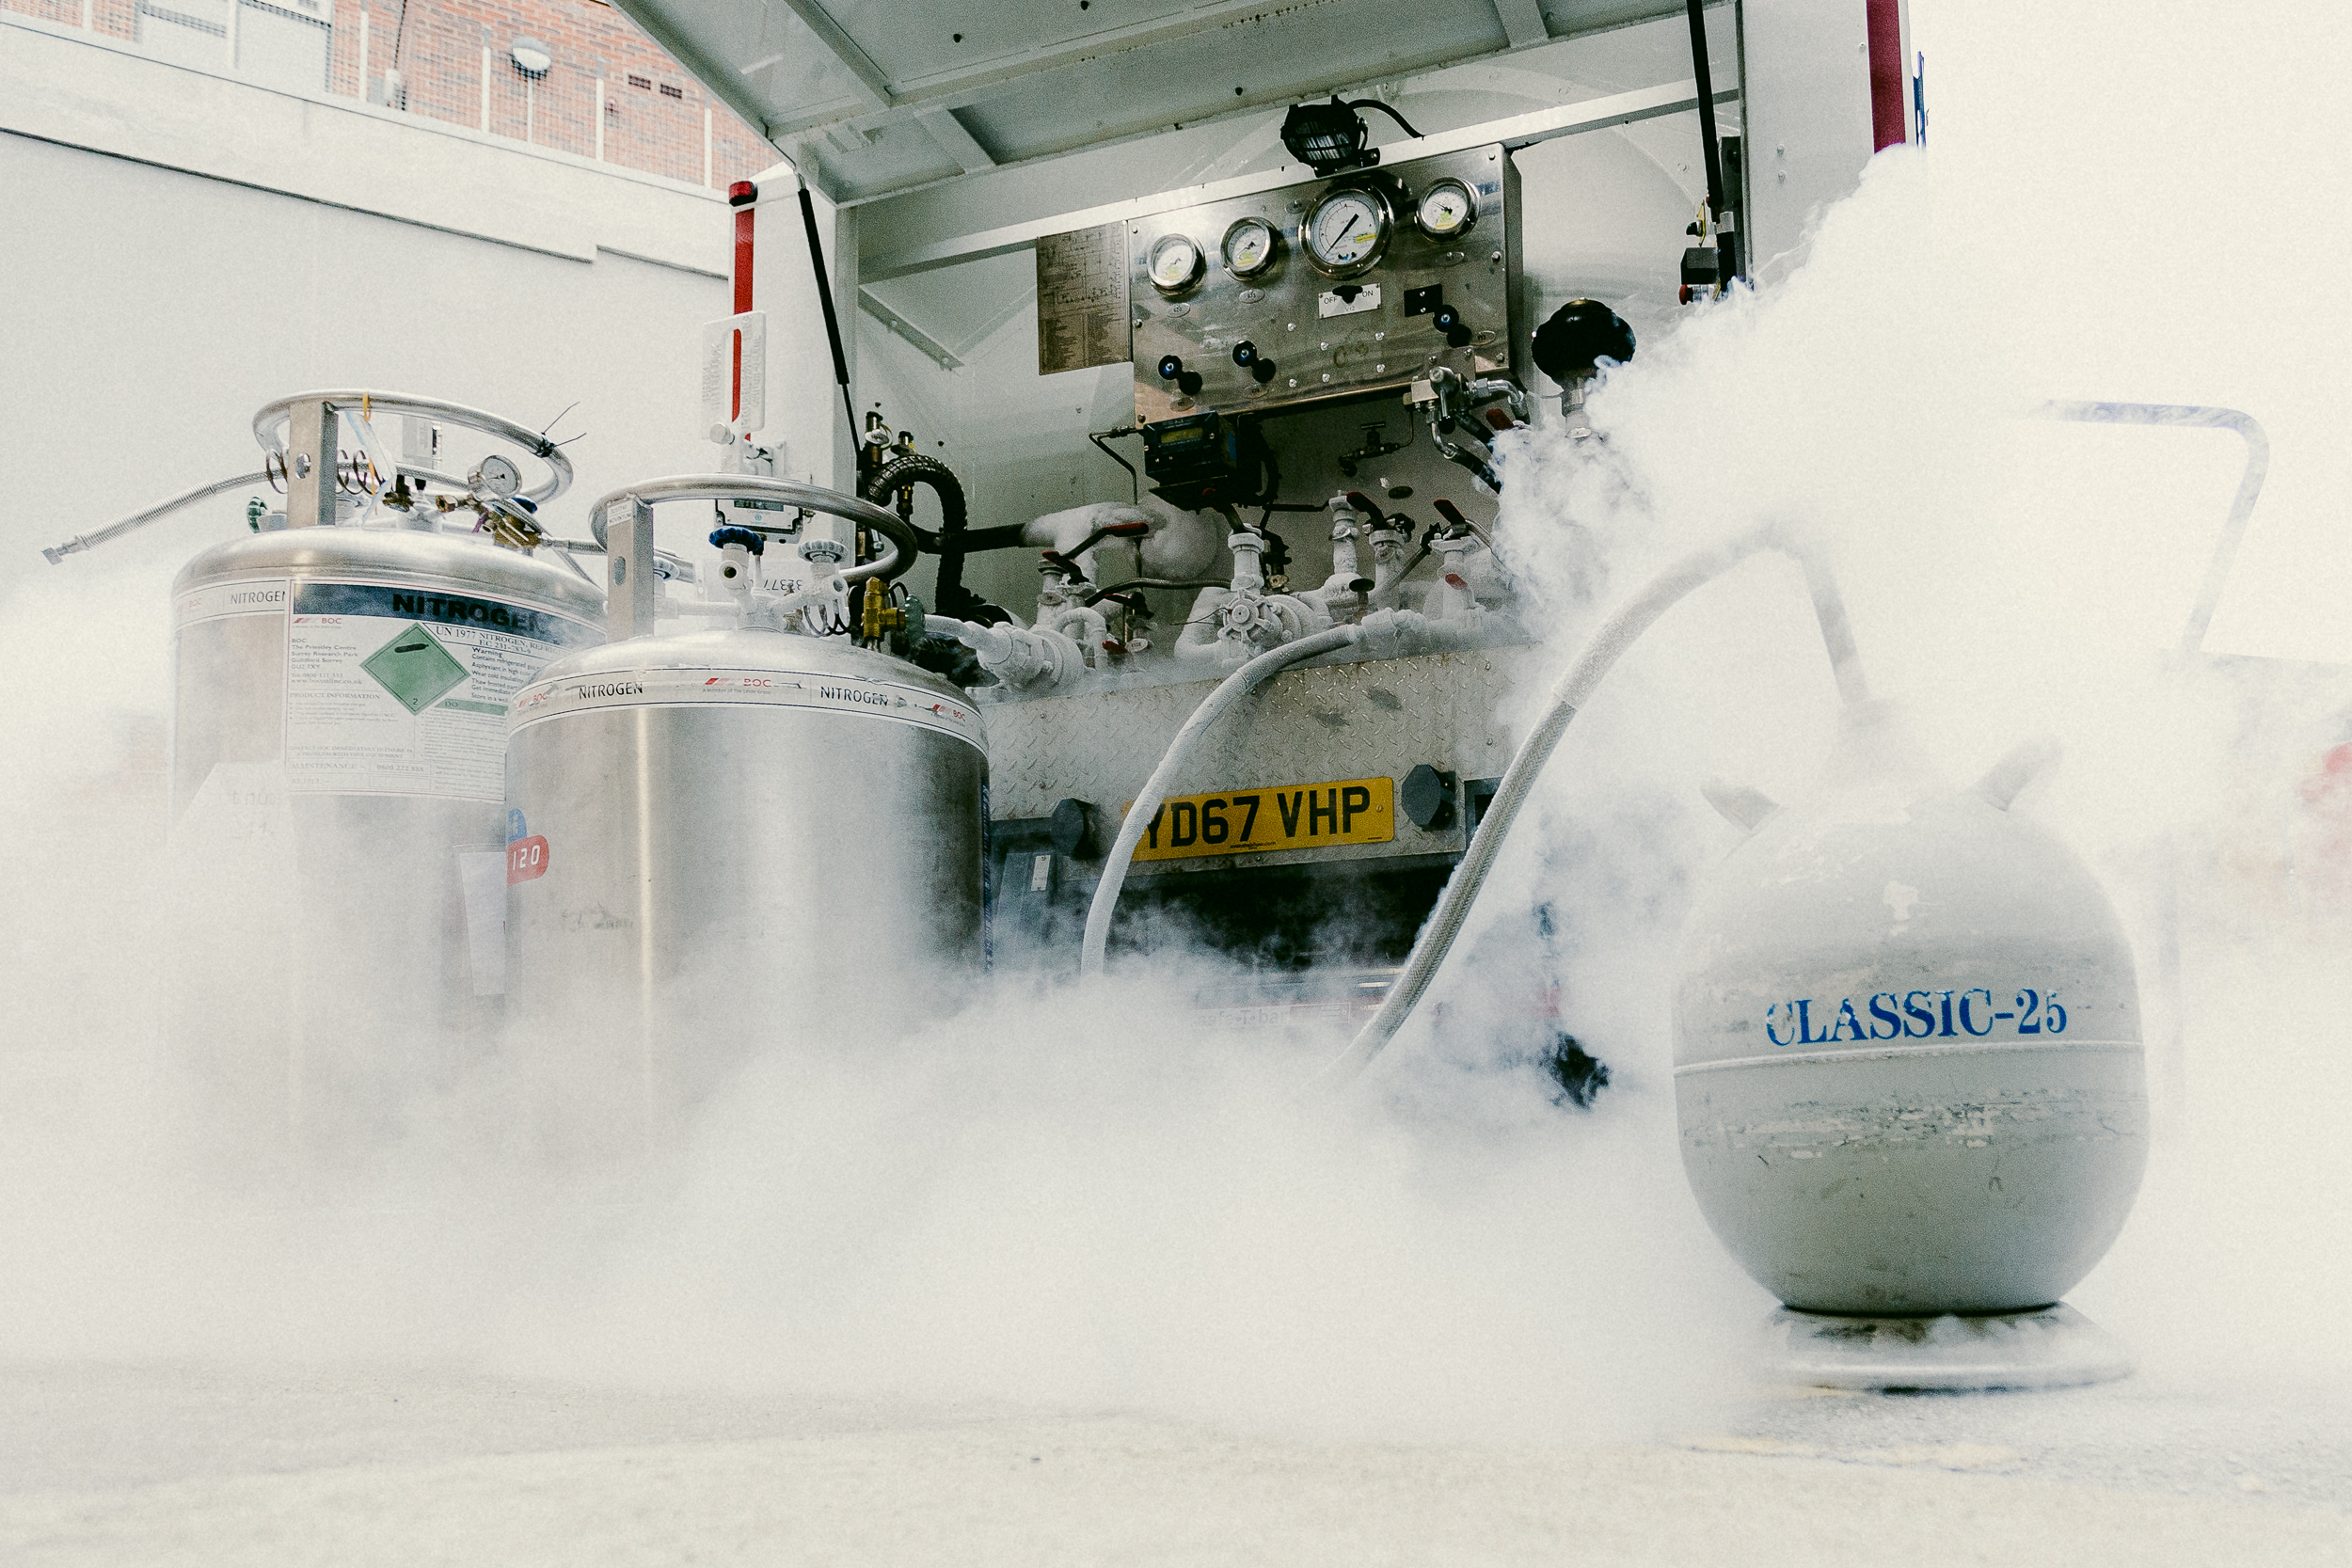 Liquid nitrogen supply at LBIC